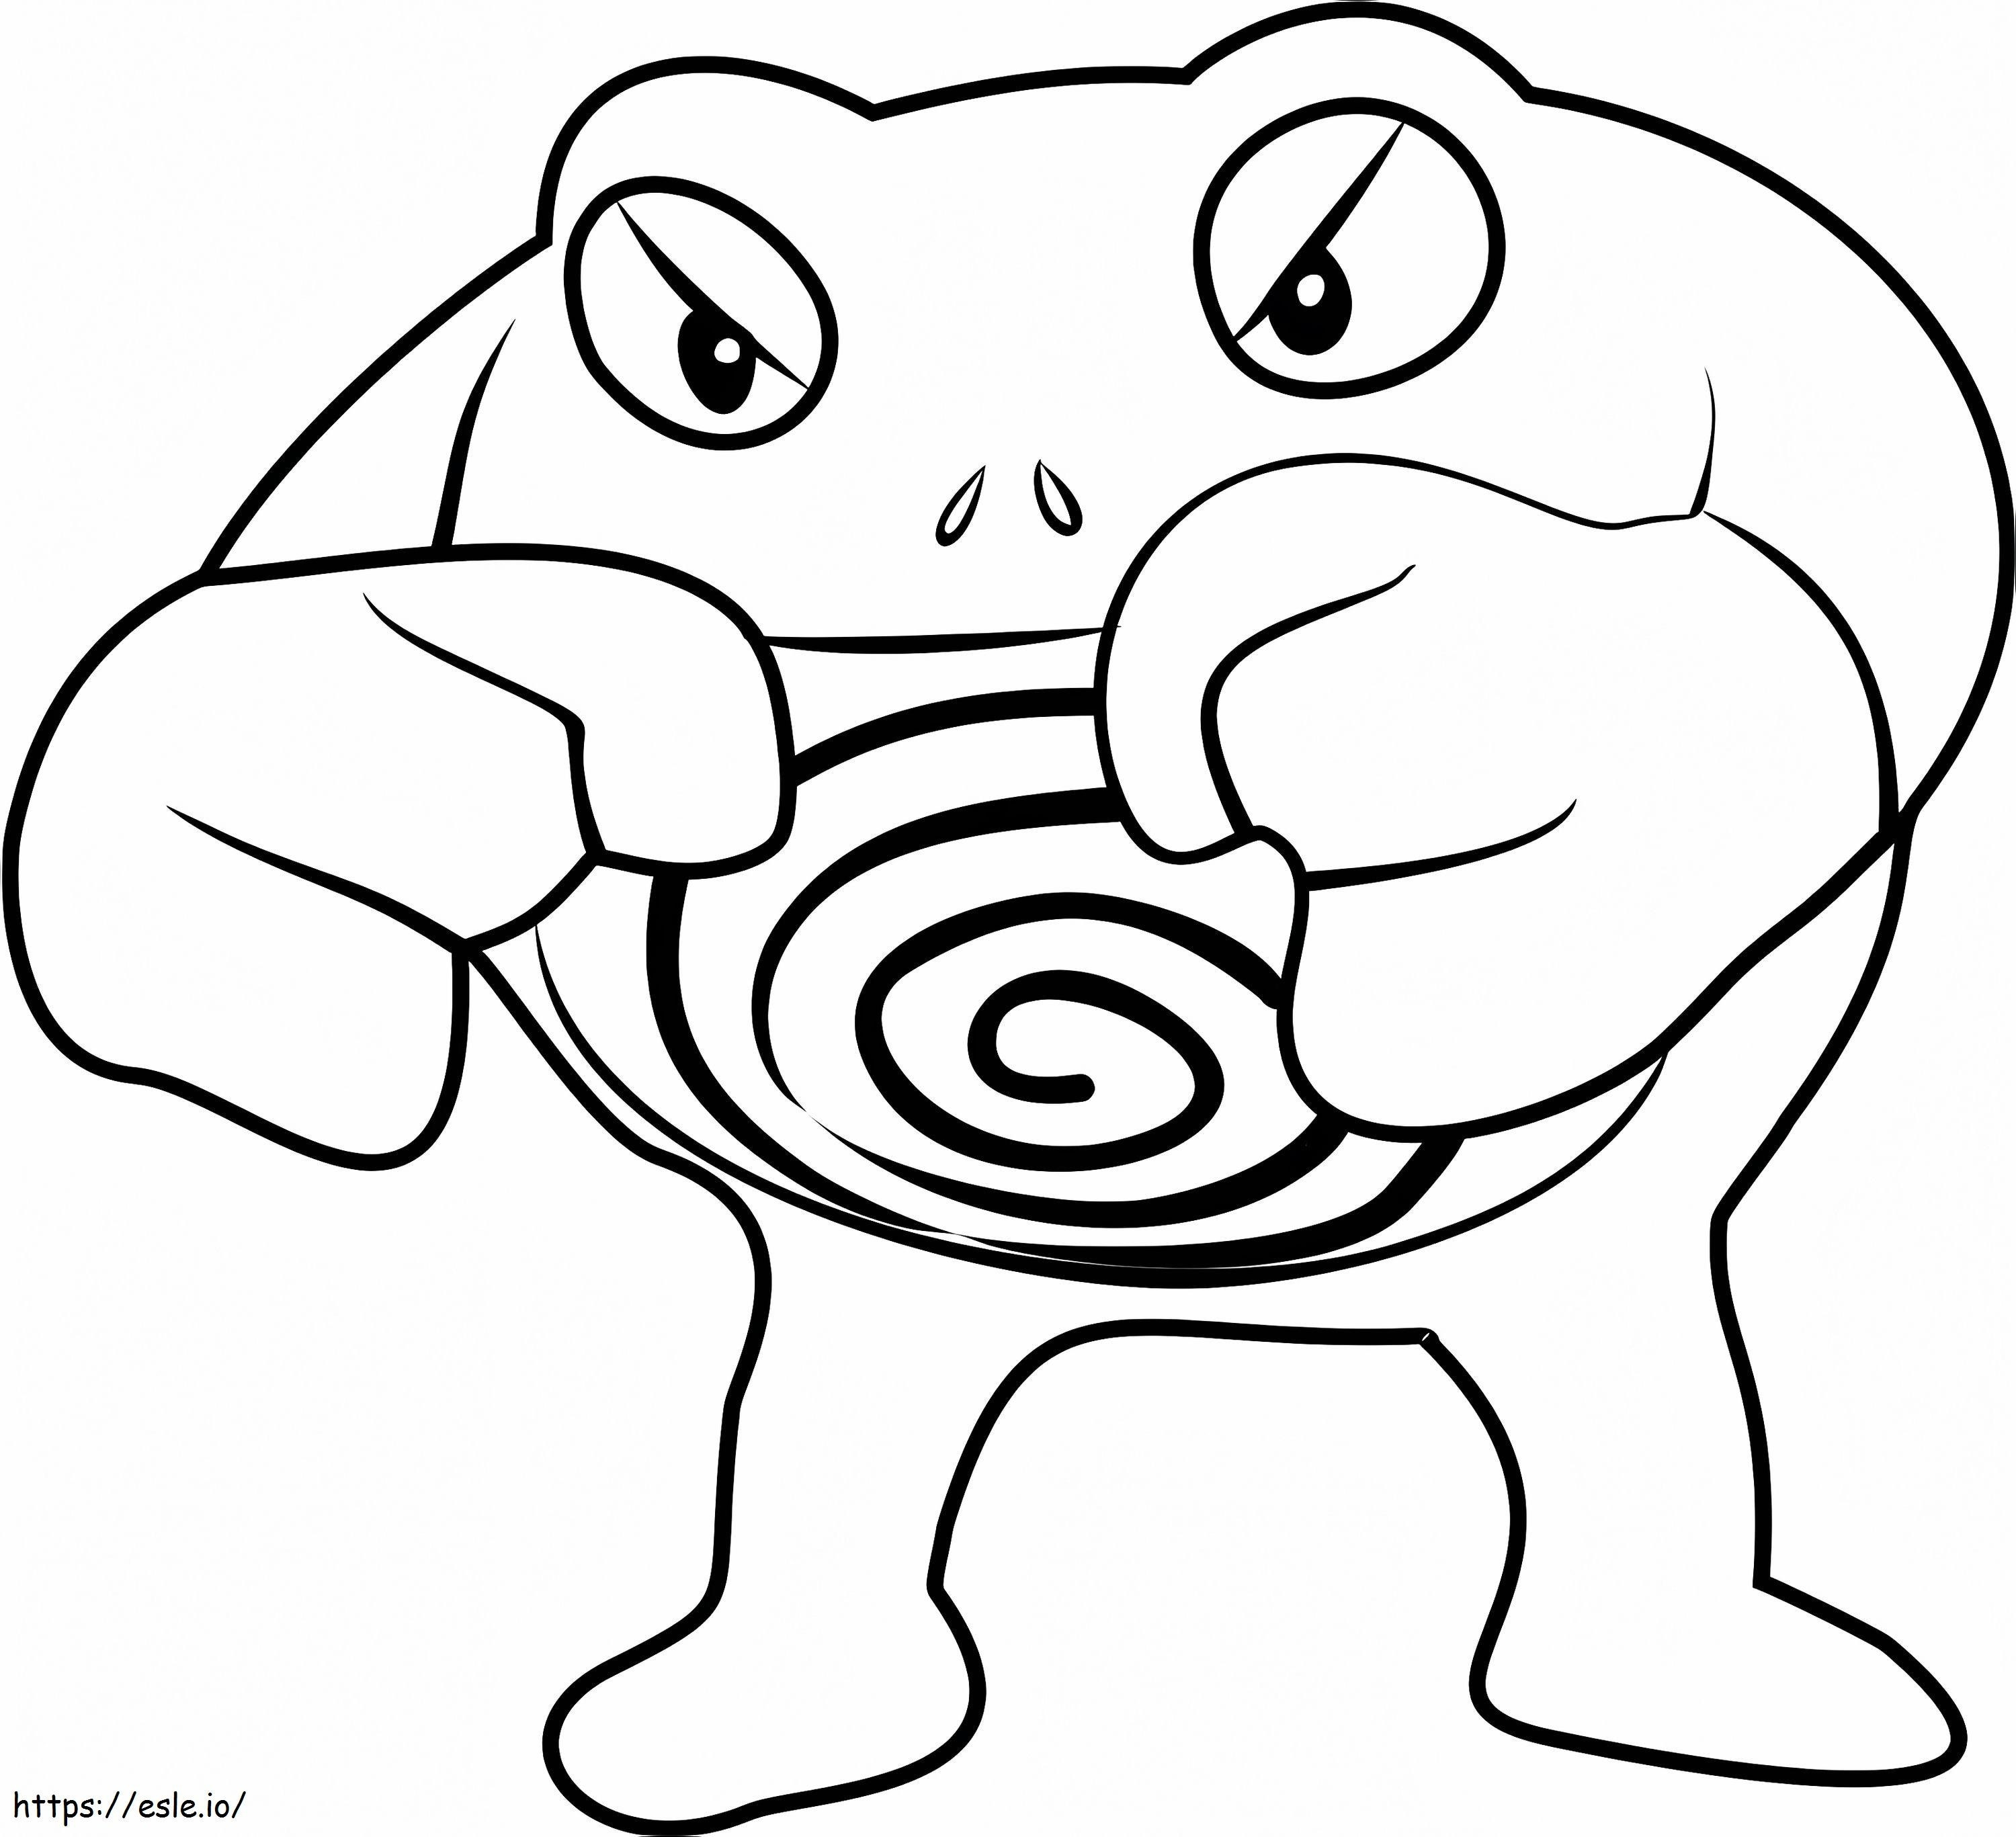 Coloriage 1530844705 Poliwrath Pokémon Go A4 à imprimer dessin